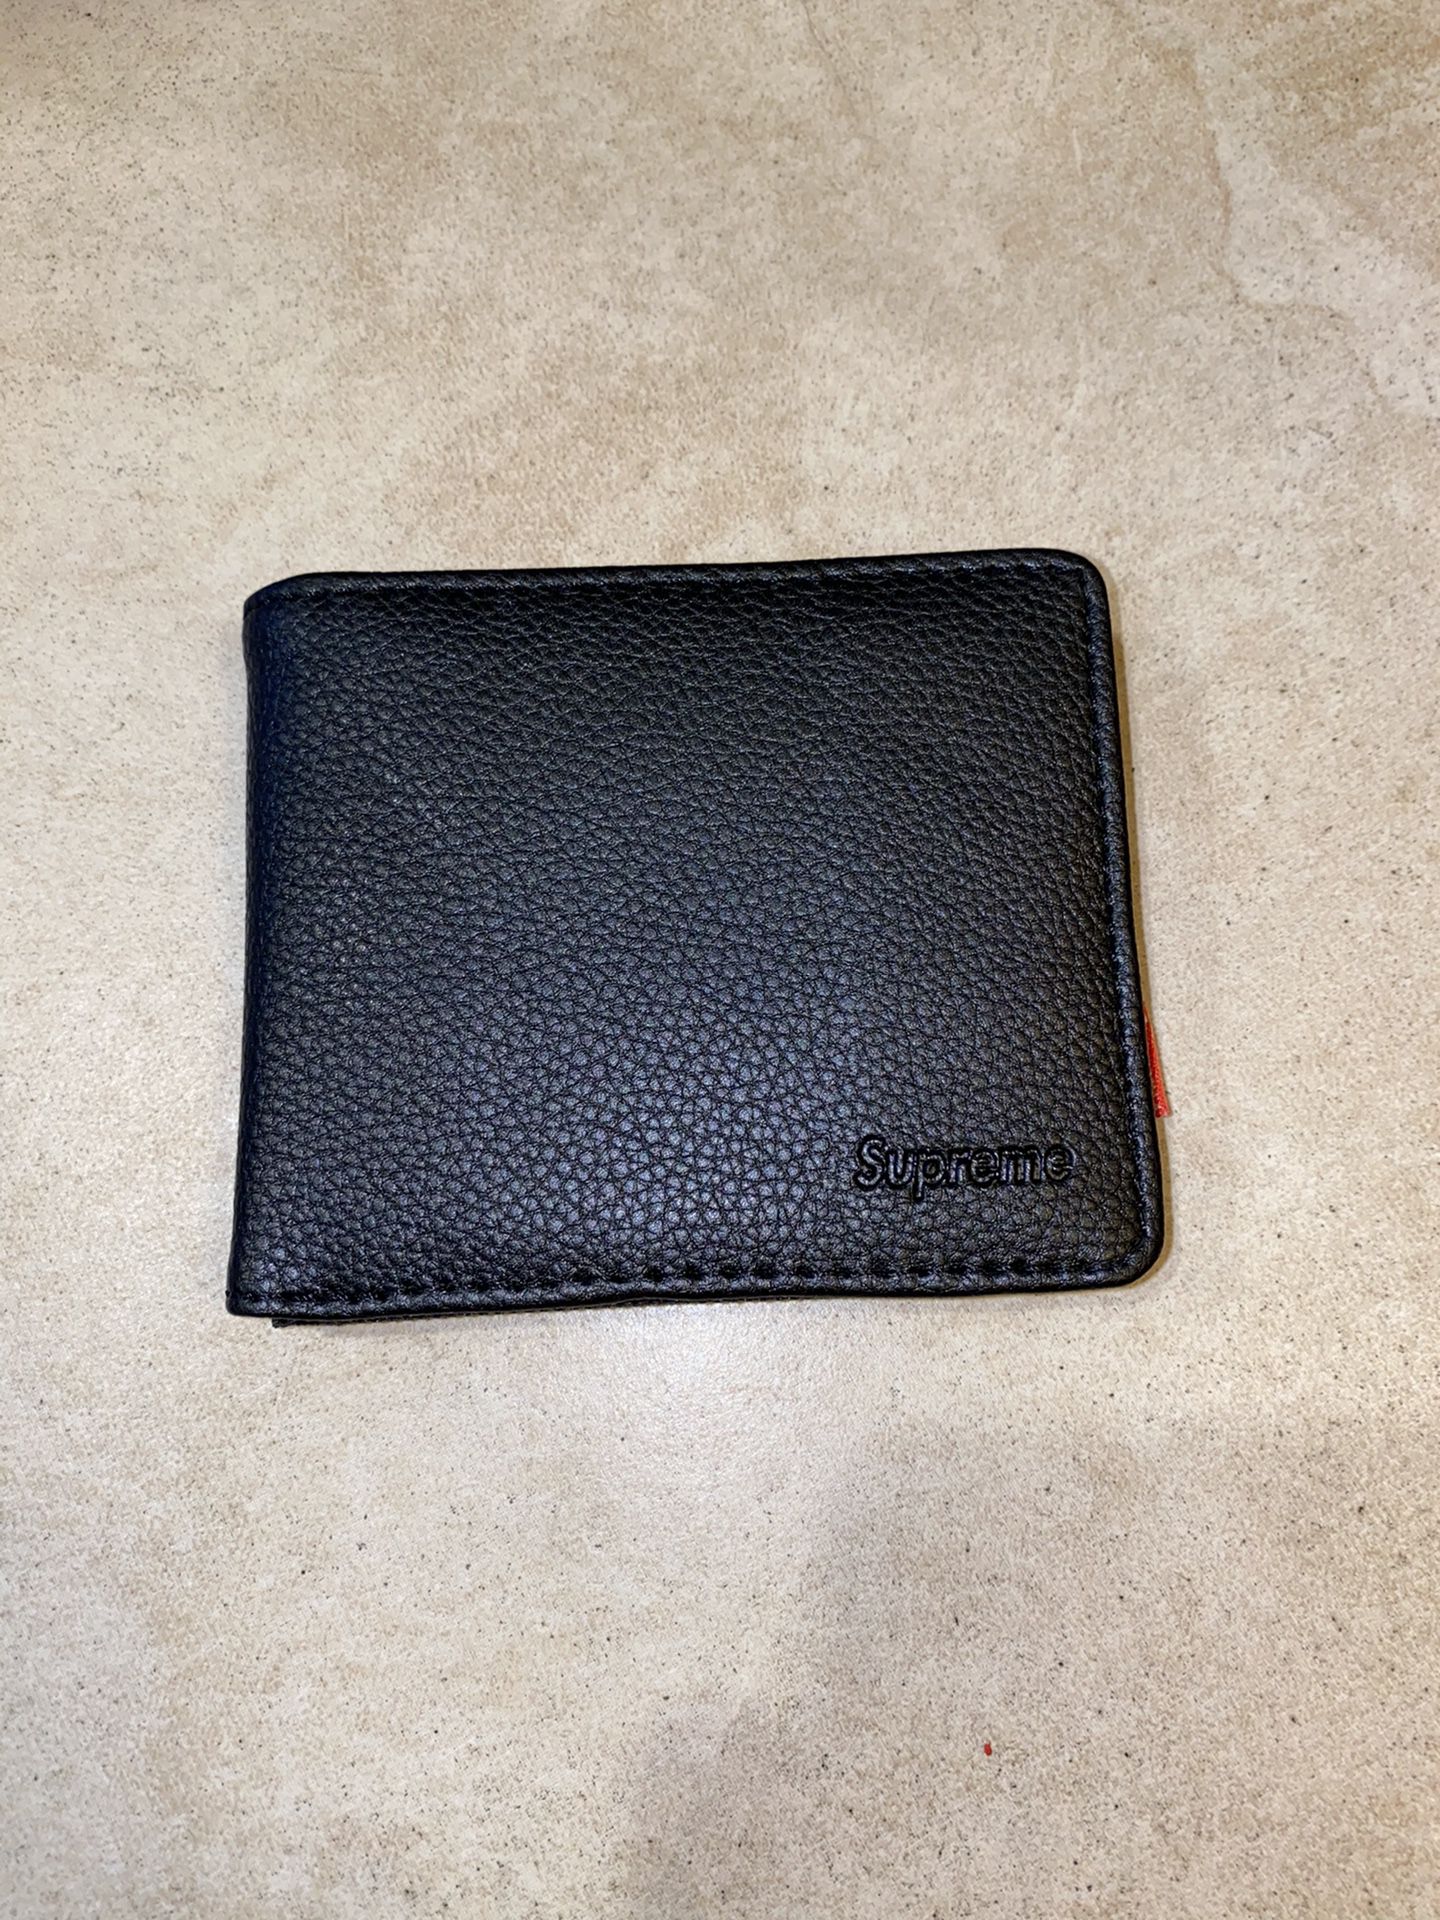 Supreme Black Leather Wallet